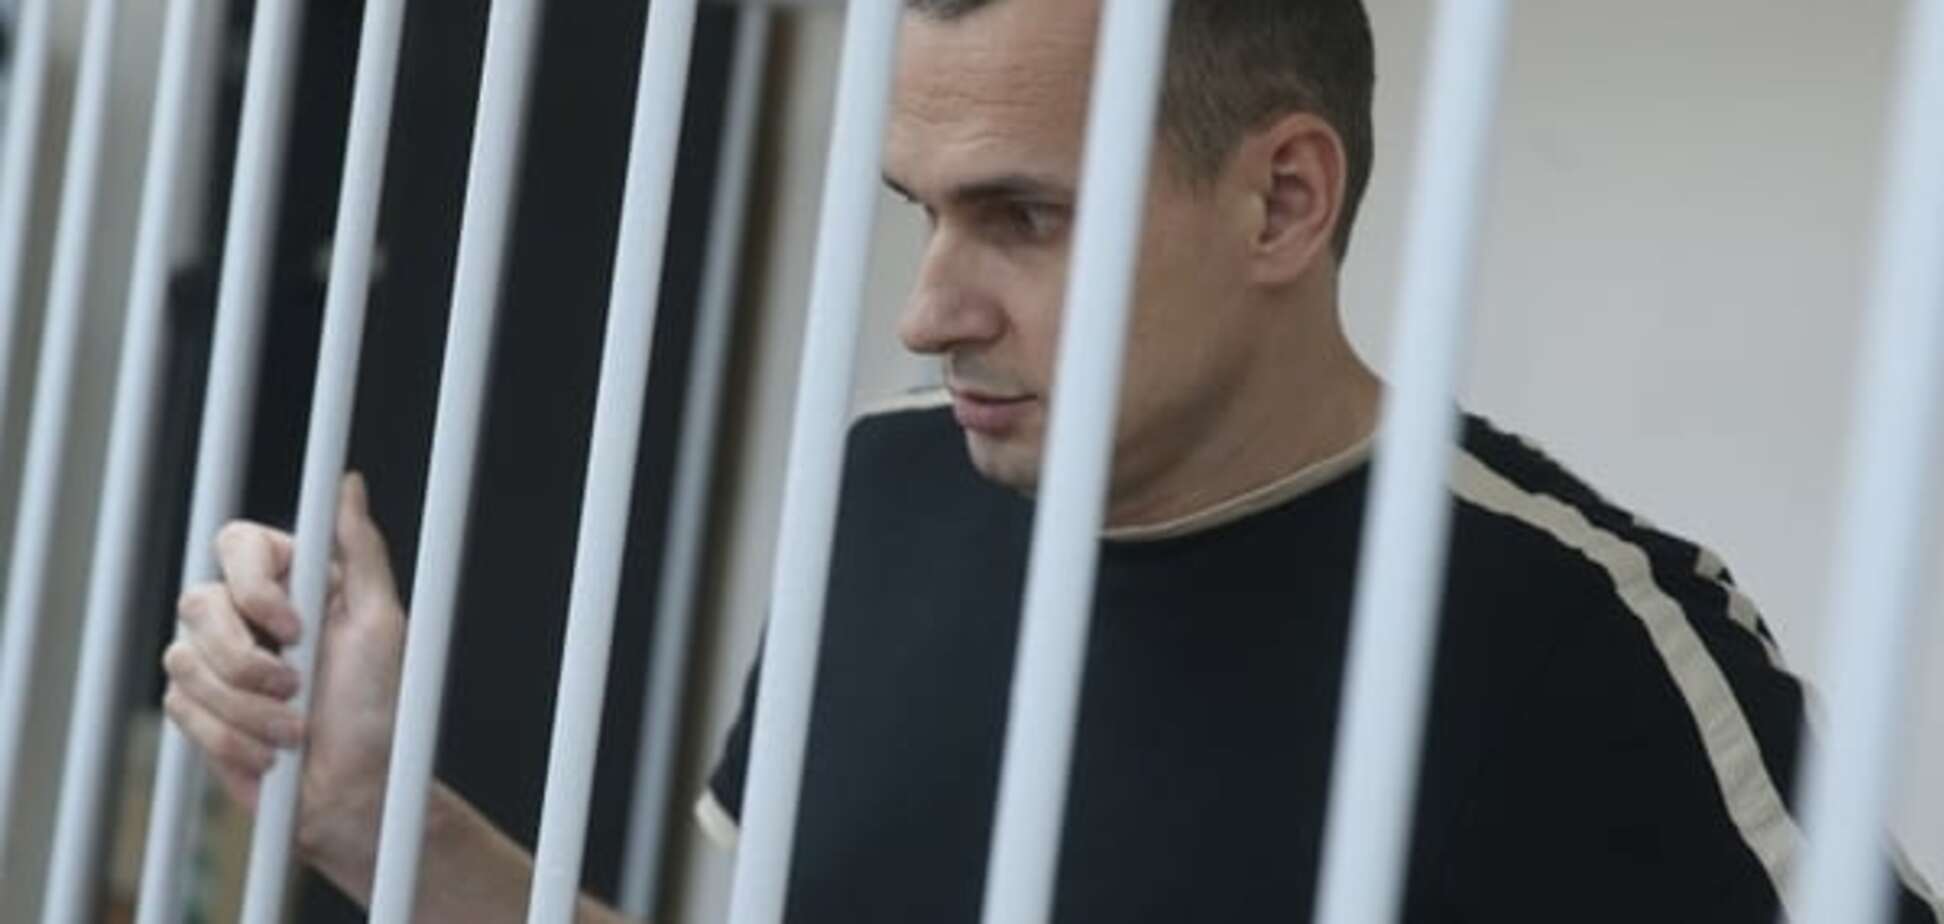 Свободу Олегу Сенцову: активисты направят Путину петицию с требованием освободить украинского режиссера